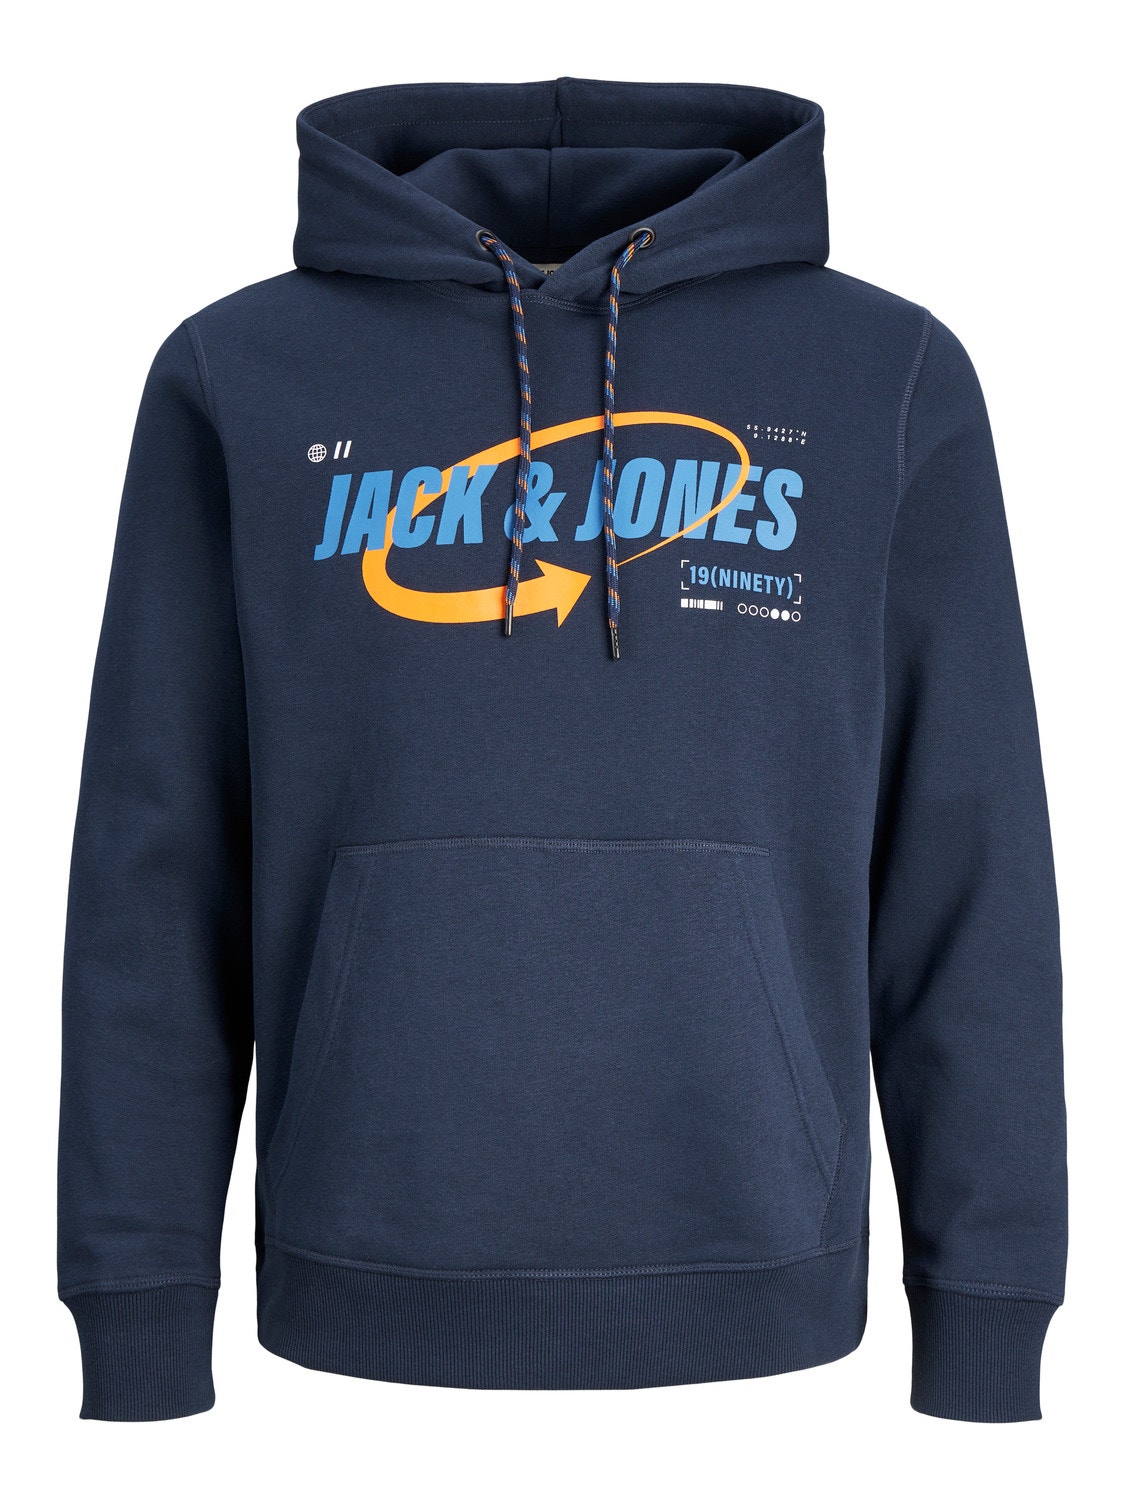 Jack & Jones Hoodie Logo -Navy Blazer - 12245714